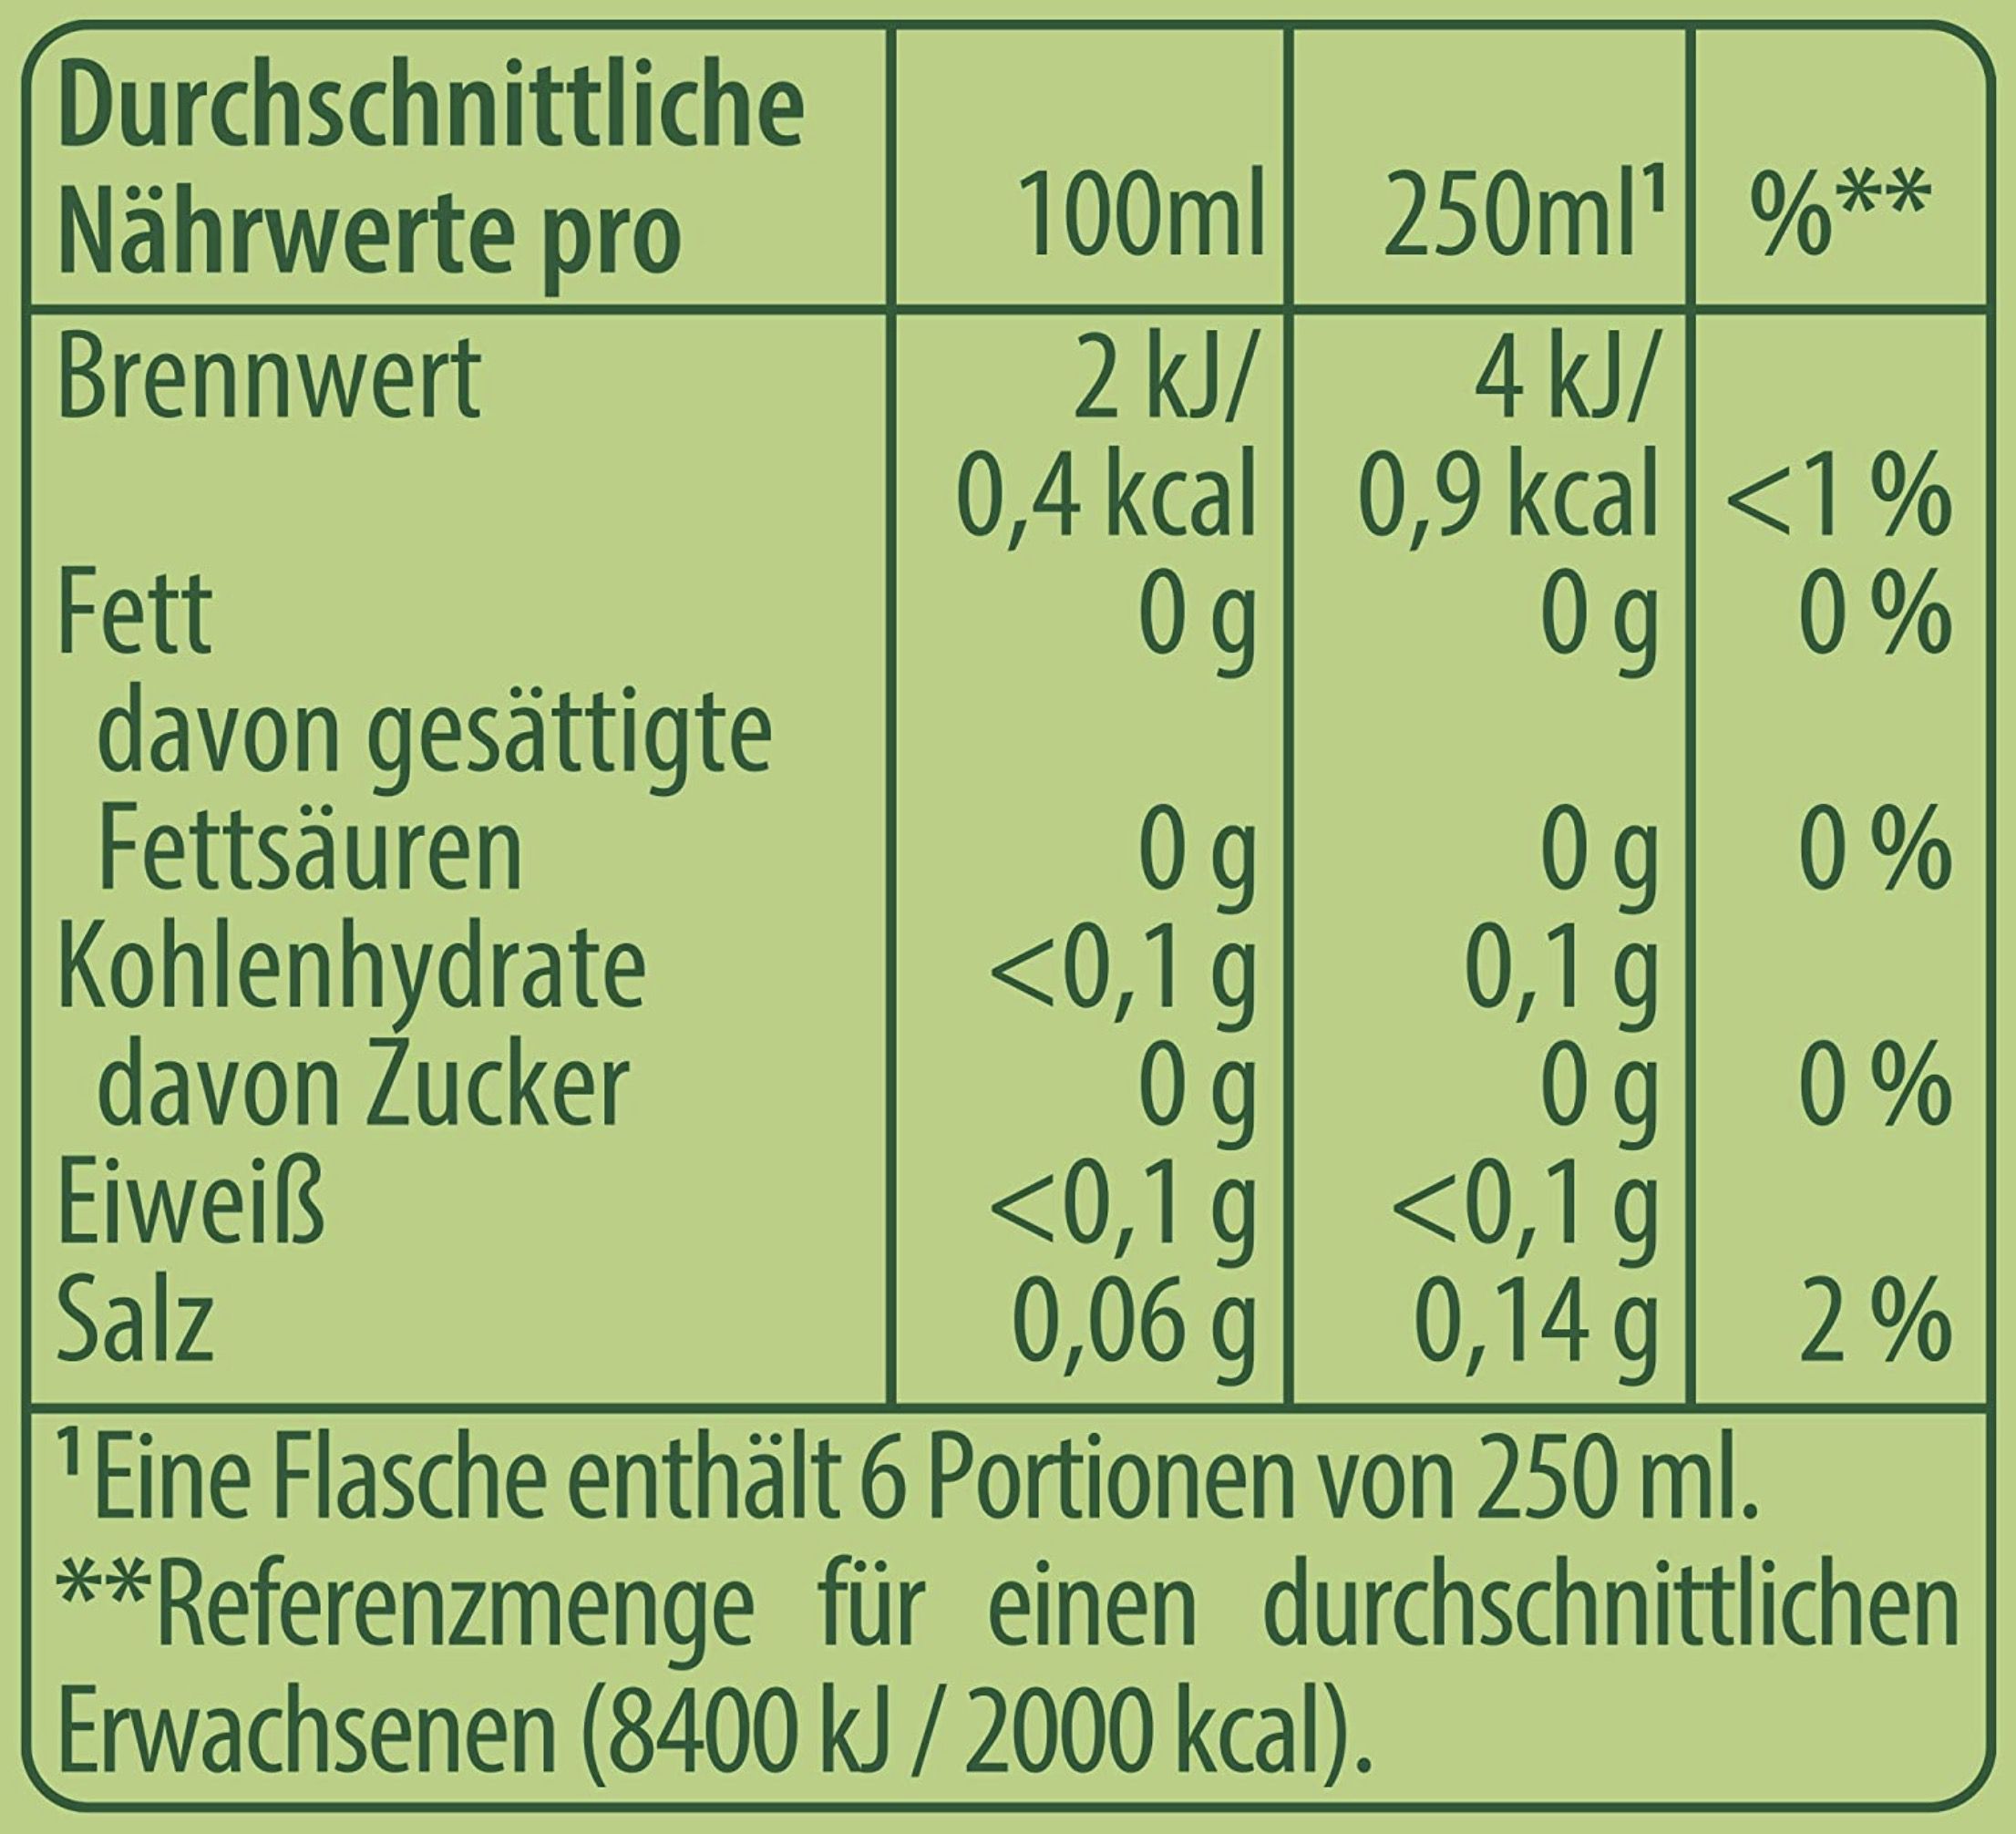 6x 1,5 Liter 7UP Free zuckerfreie Zitronen/Limetten Limonade für 6,83€ zzgl. Pfand